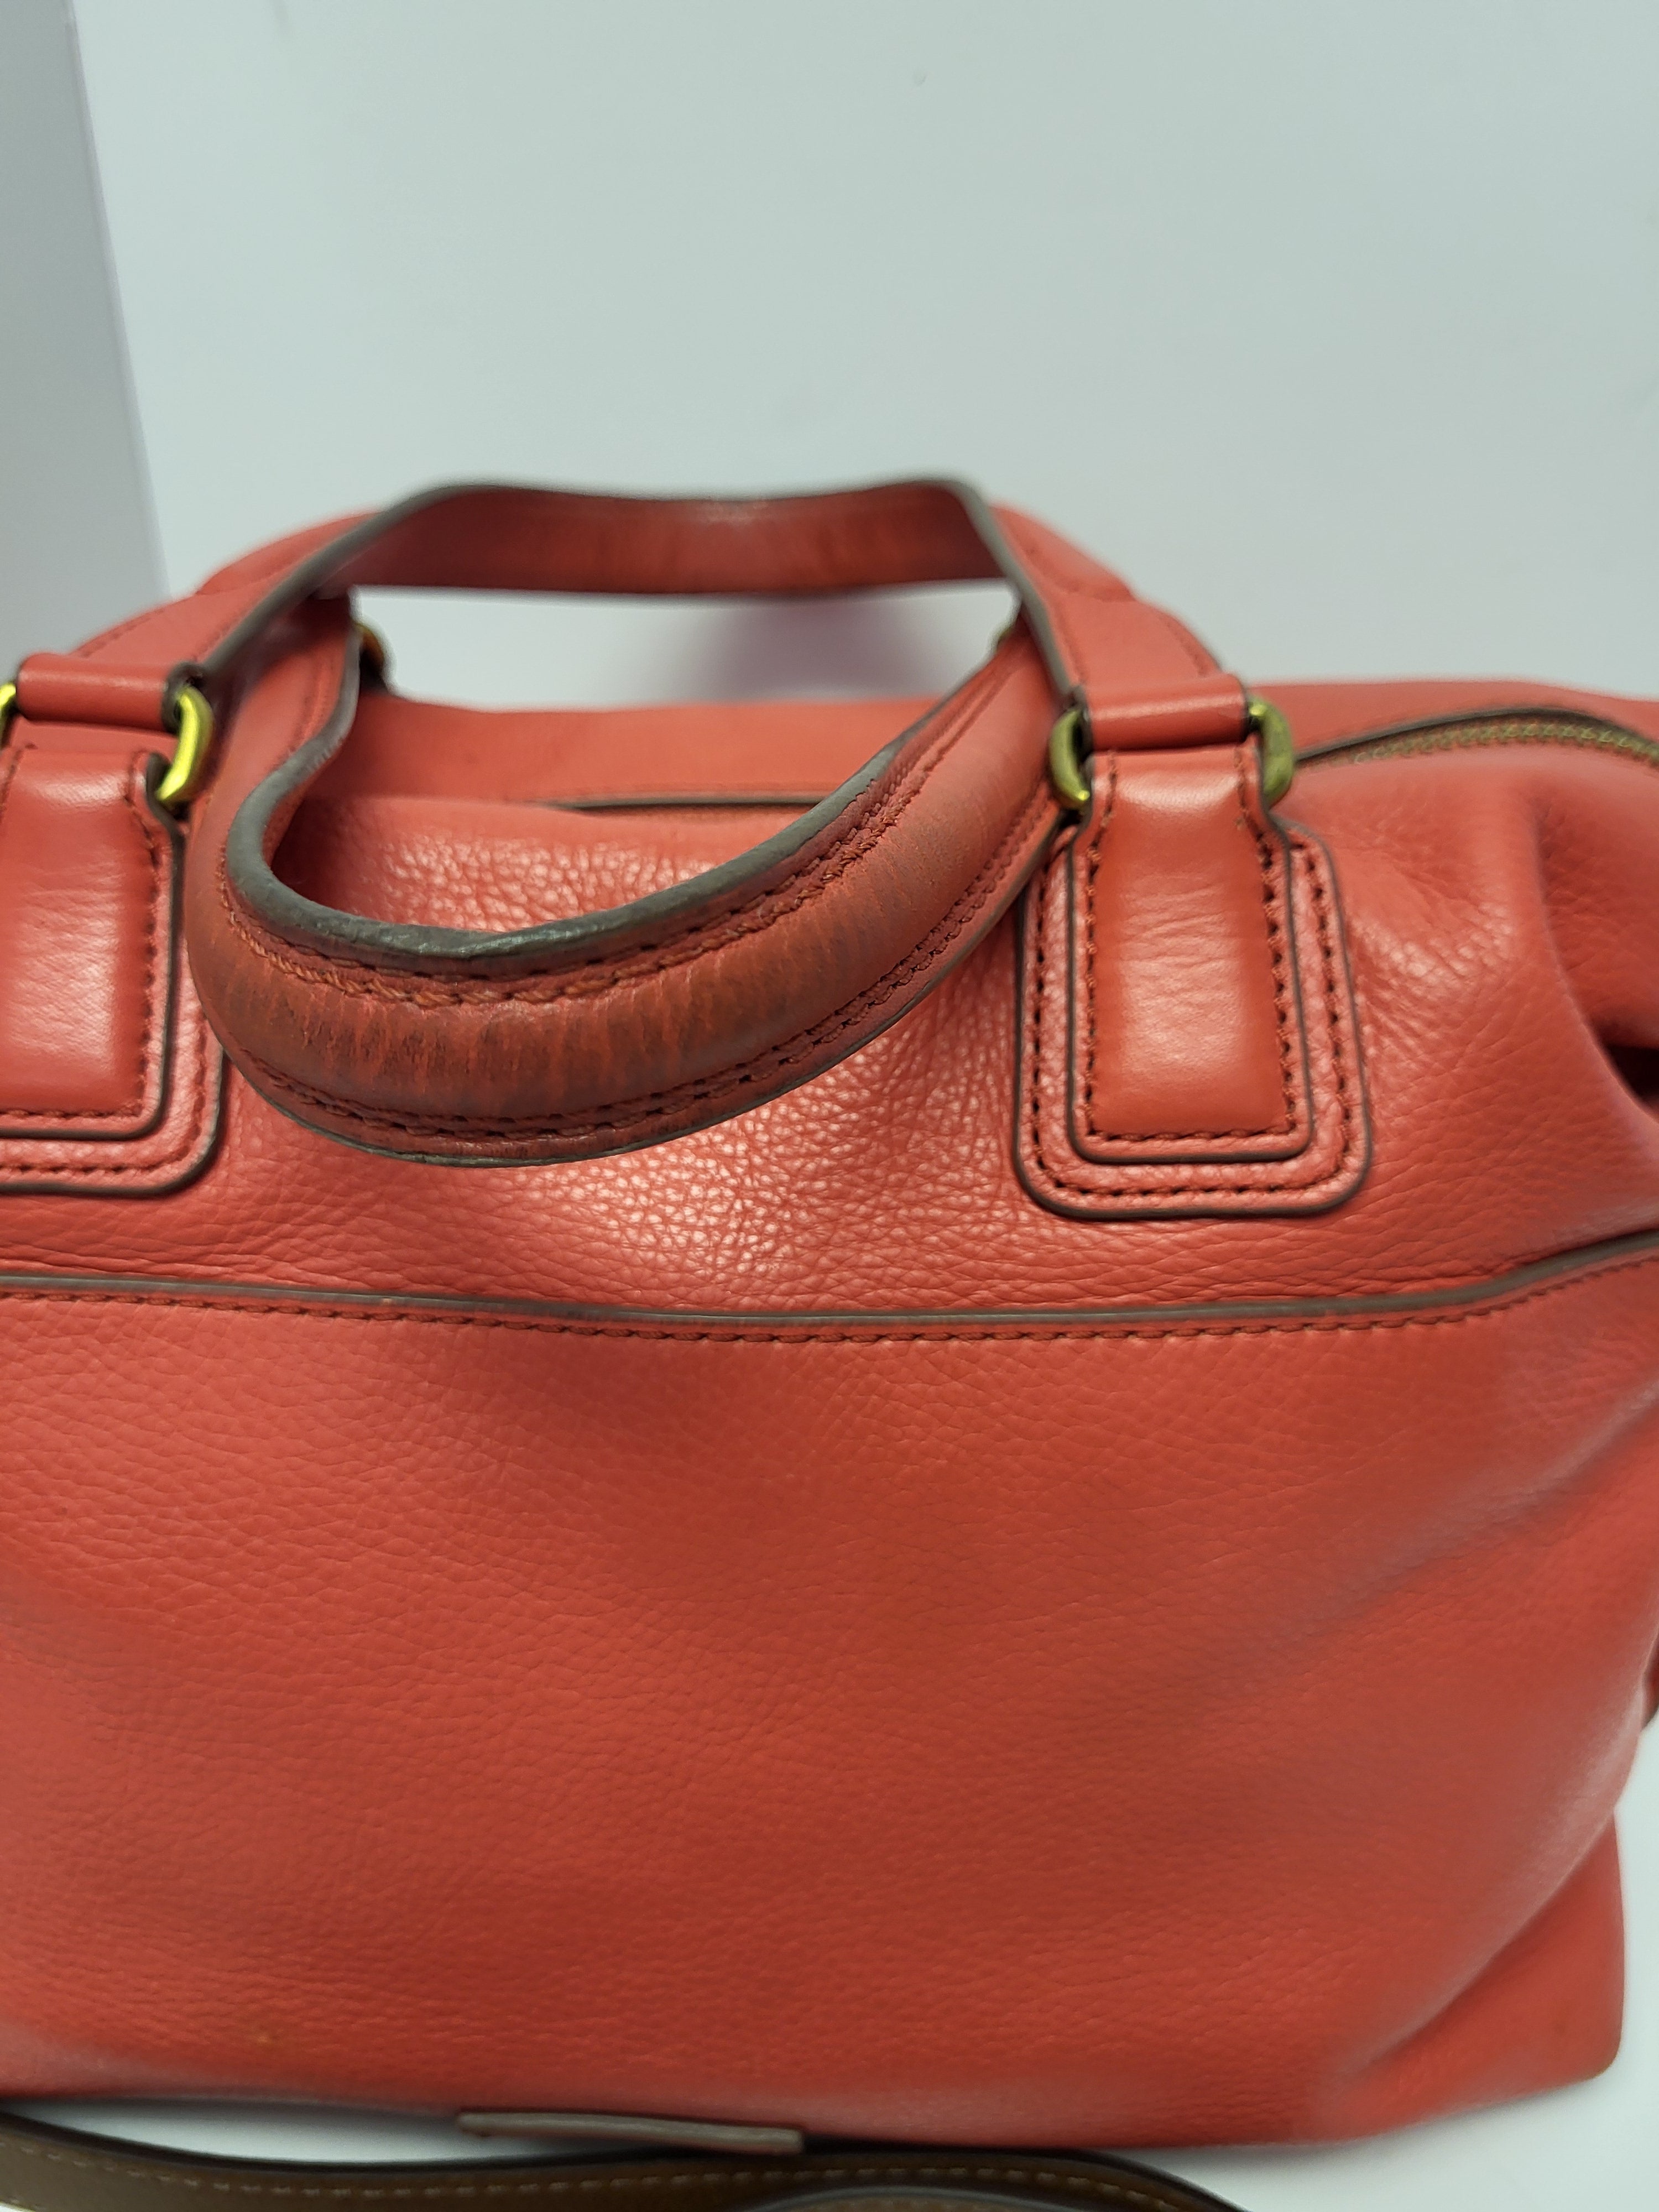 Fossil Leather Top Handle/Shoulder Bag